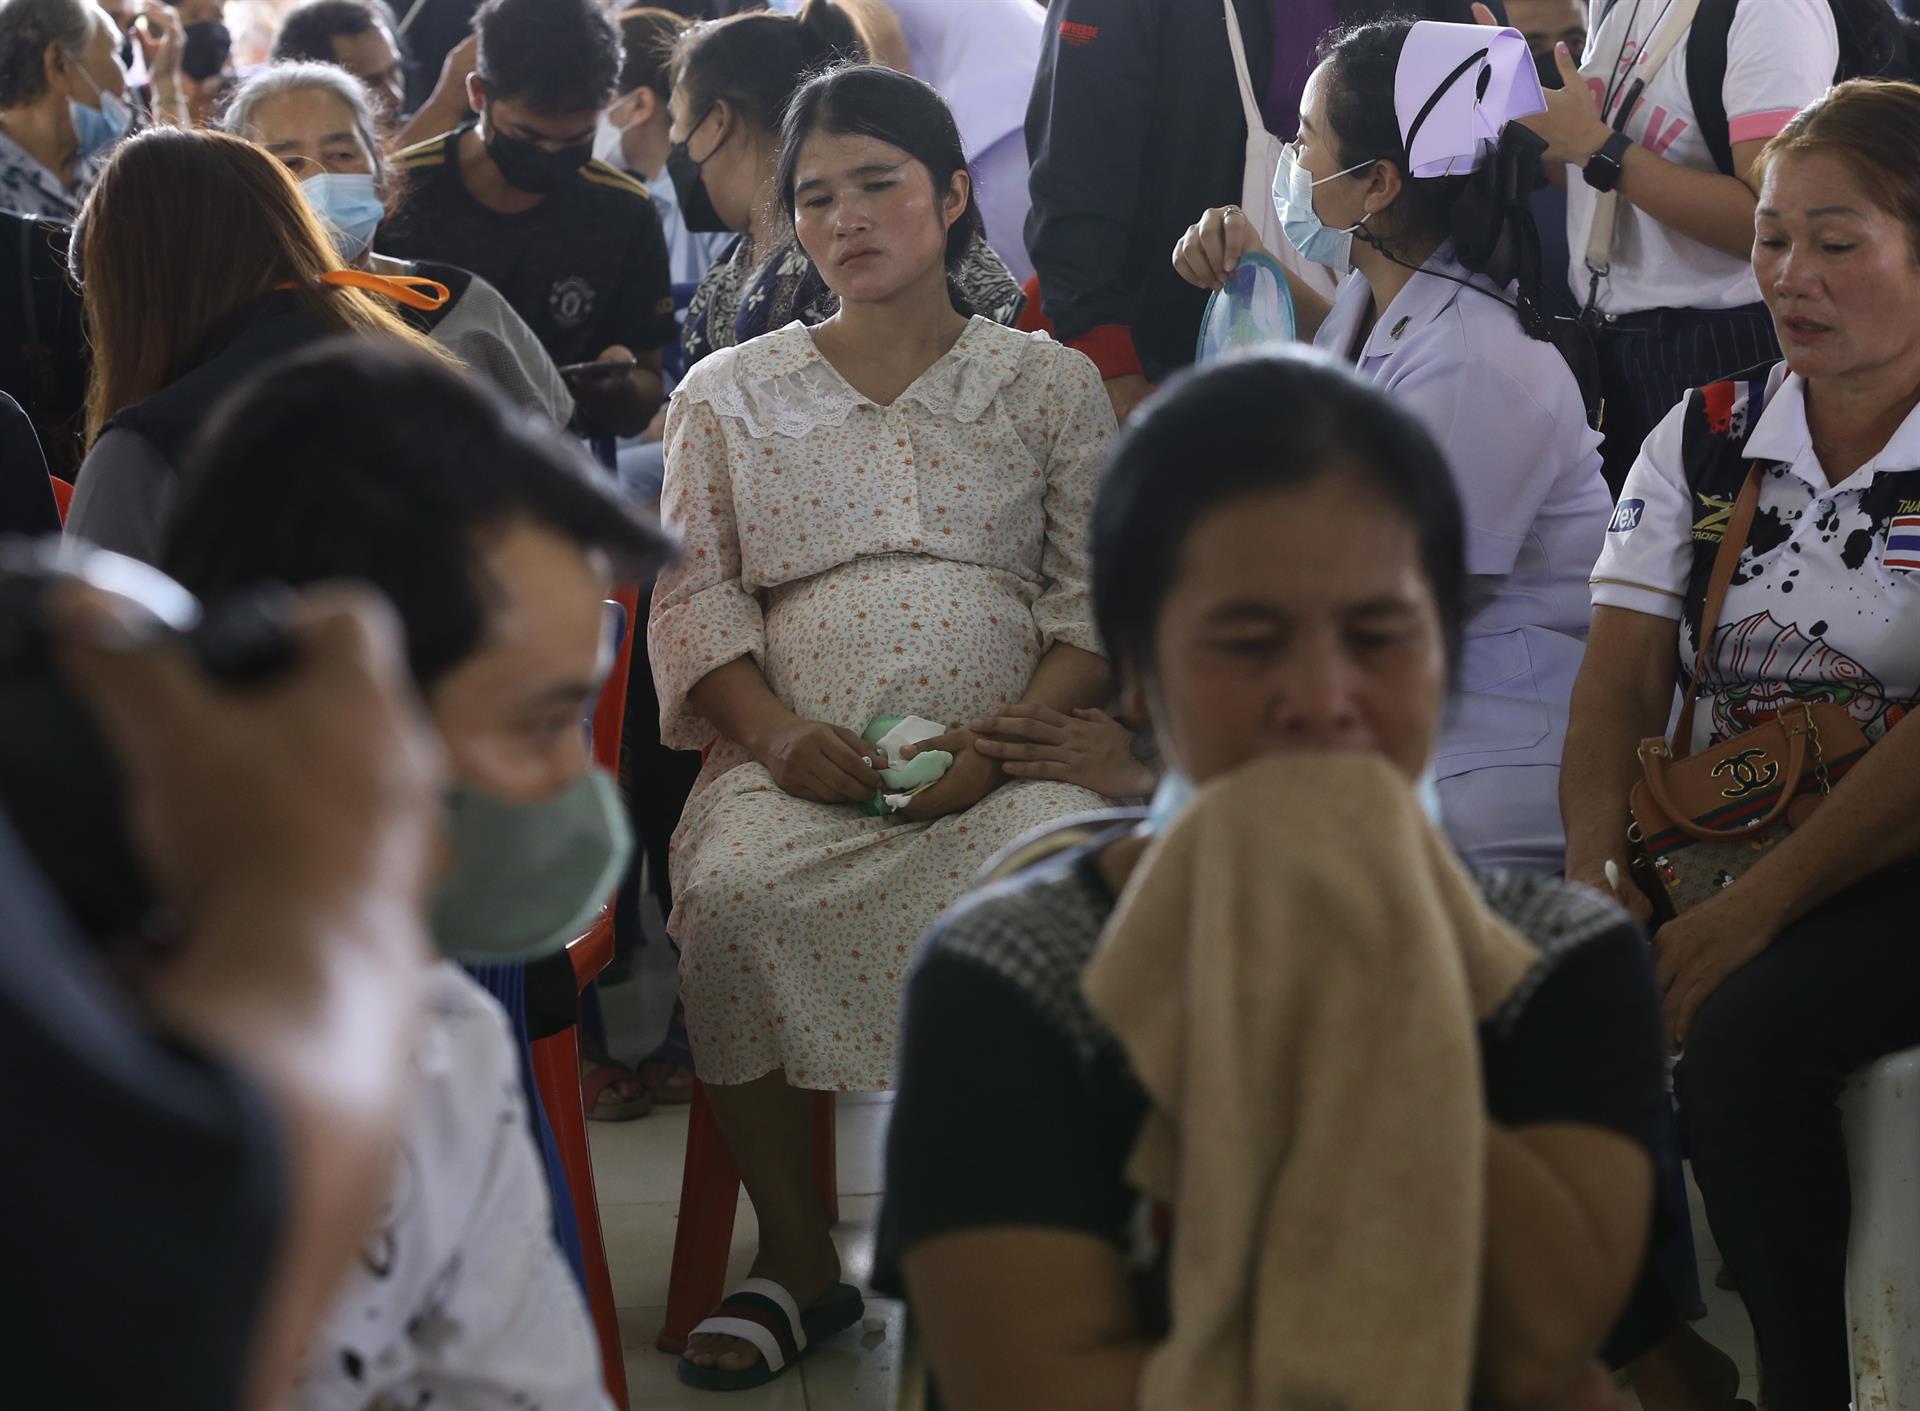 Tailandia ordena campaña urgente contra las drogas tras matanza en guardería